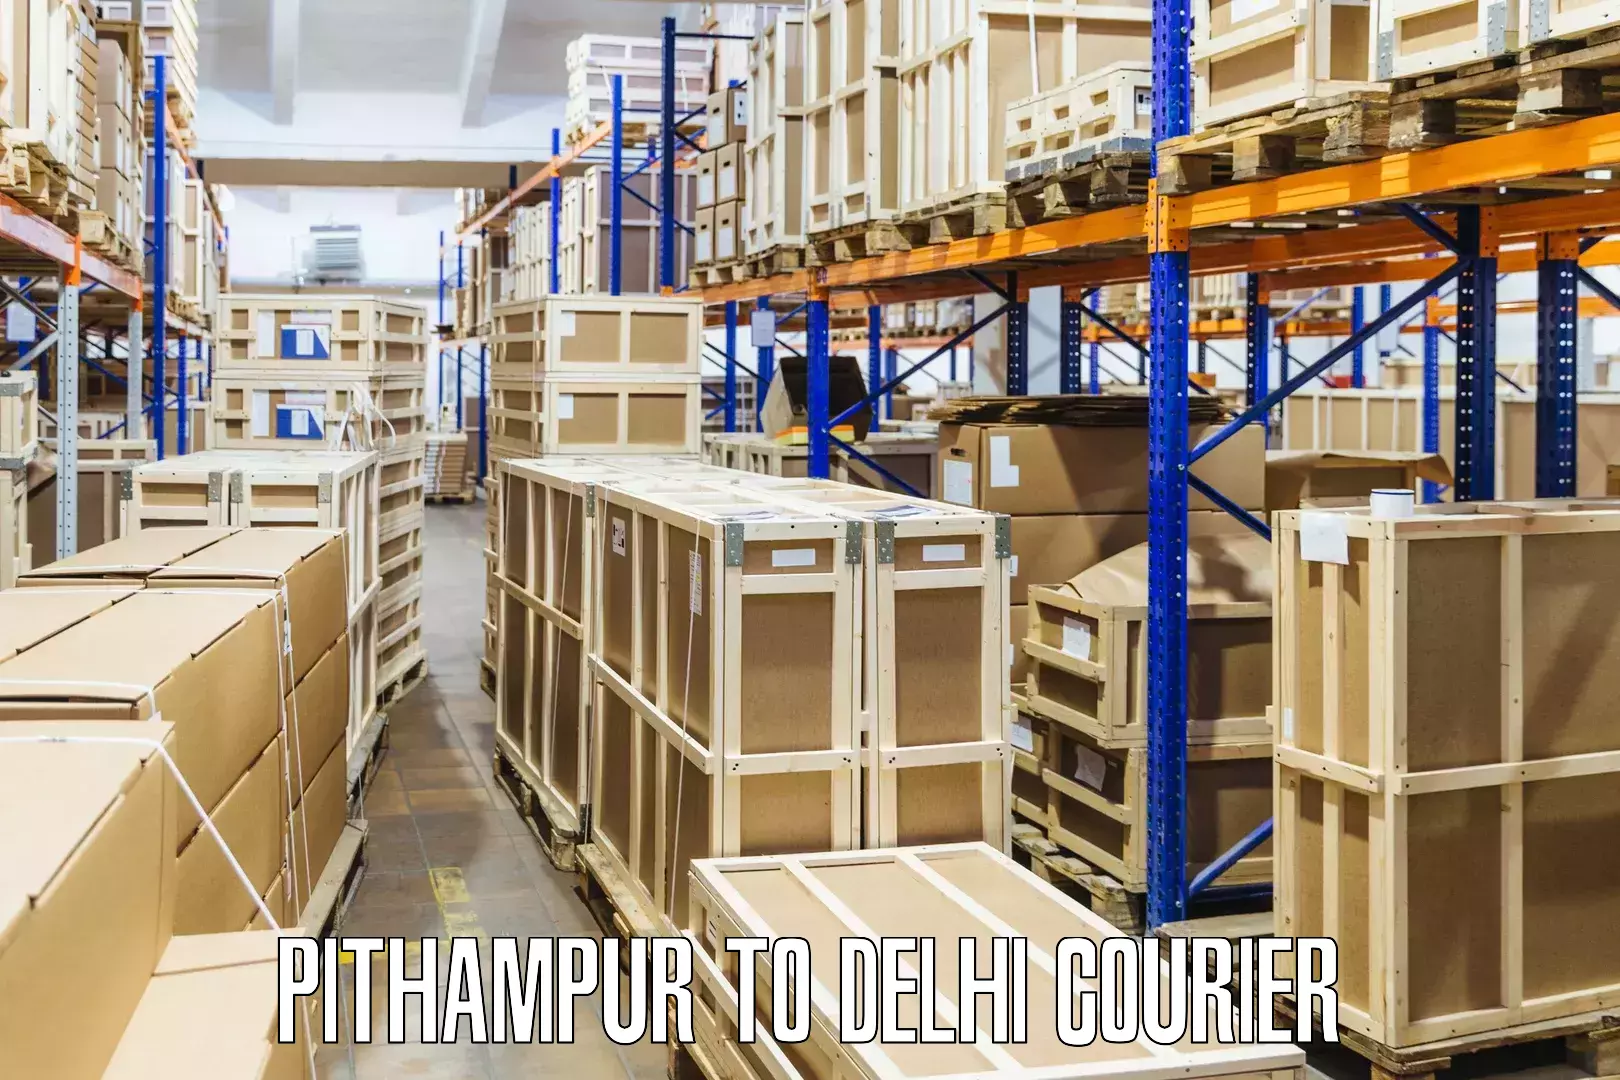 Express logistics providers Pithampur to Ashok Vihar